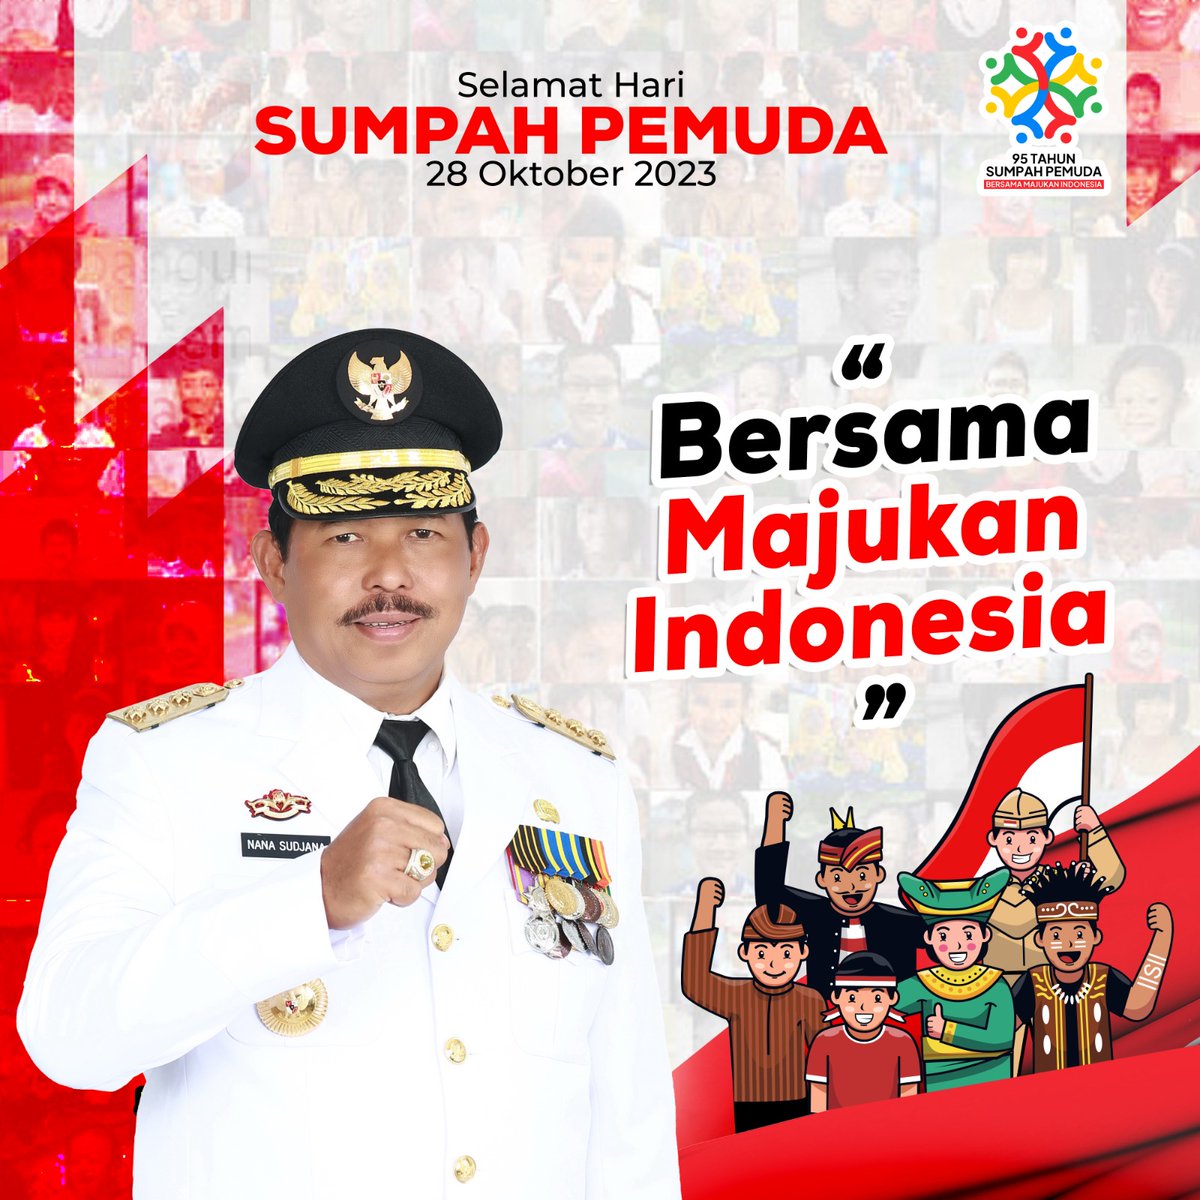 Selamat memperingati #harisumpahpemuda, 28 Oktober 2023

'Bersama Majukan Indonesia'